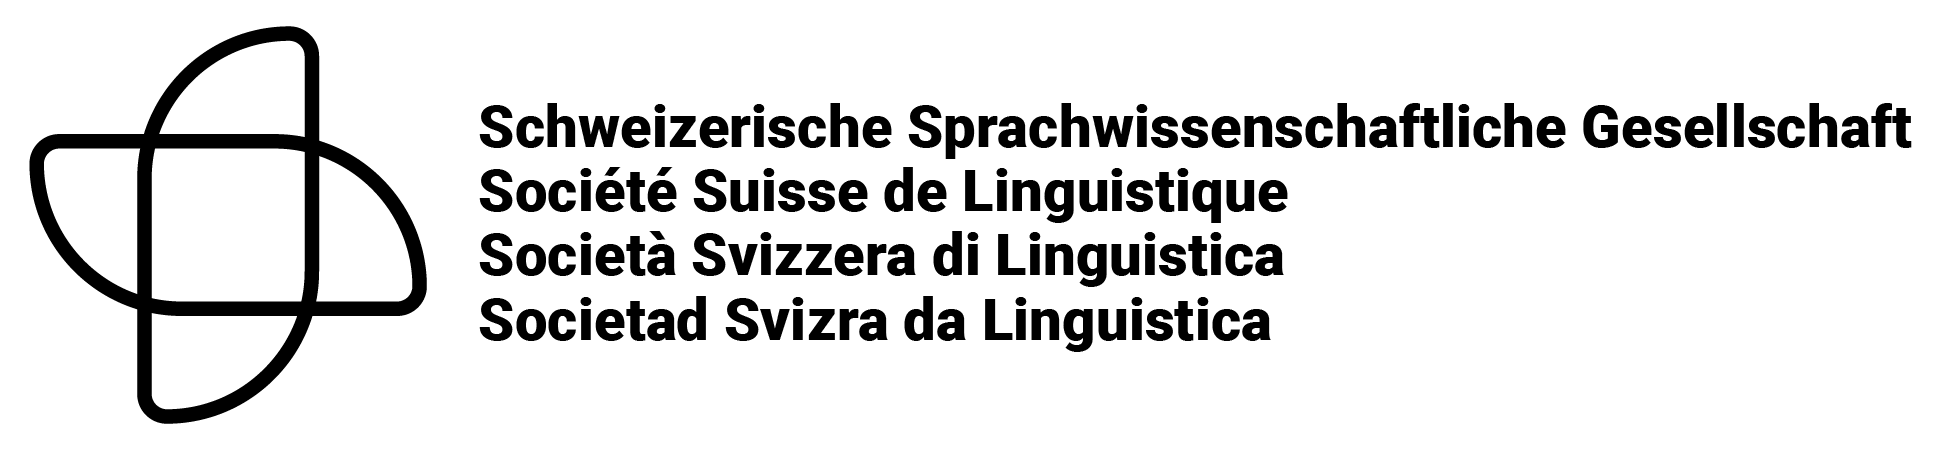 Schweizerische Sprachwissenschaftliche Gesellschaft